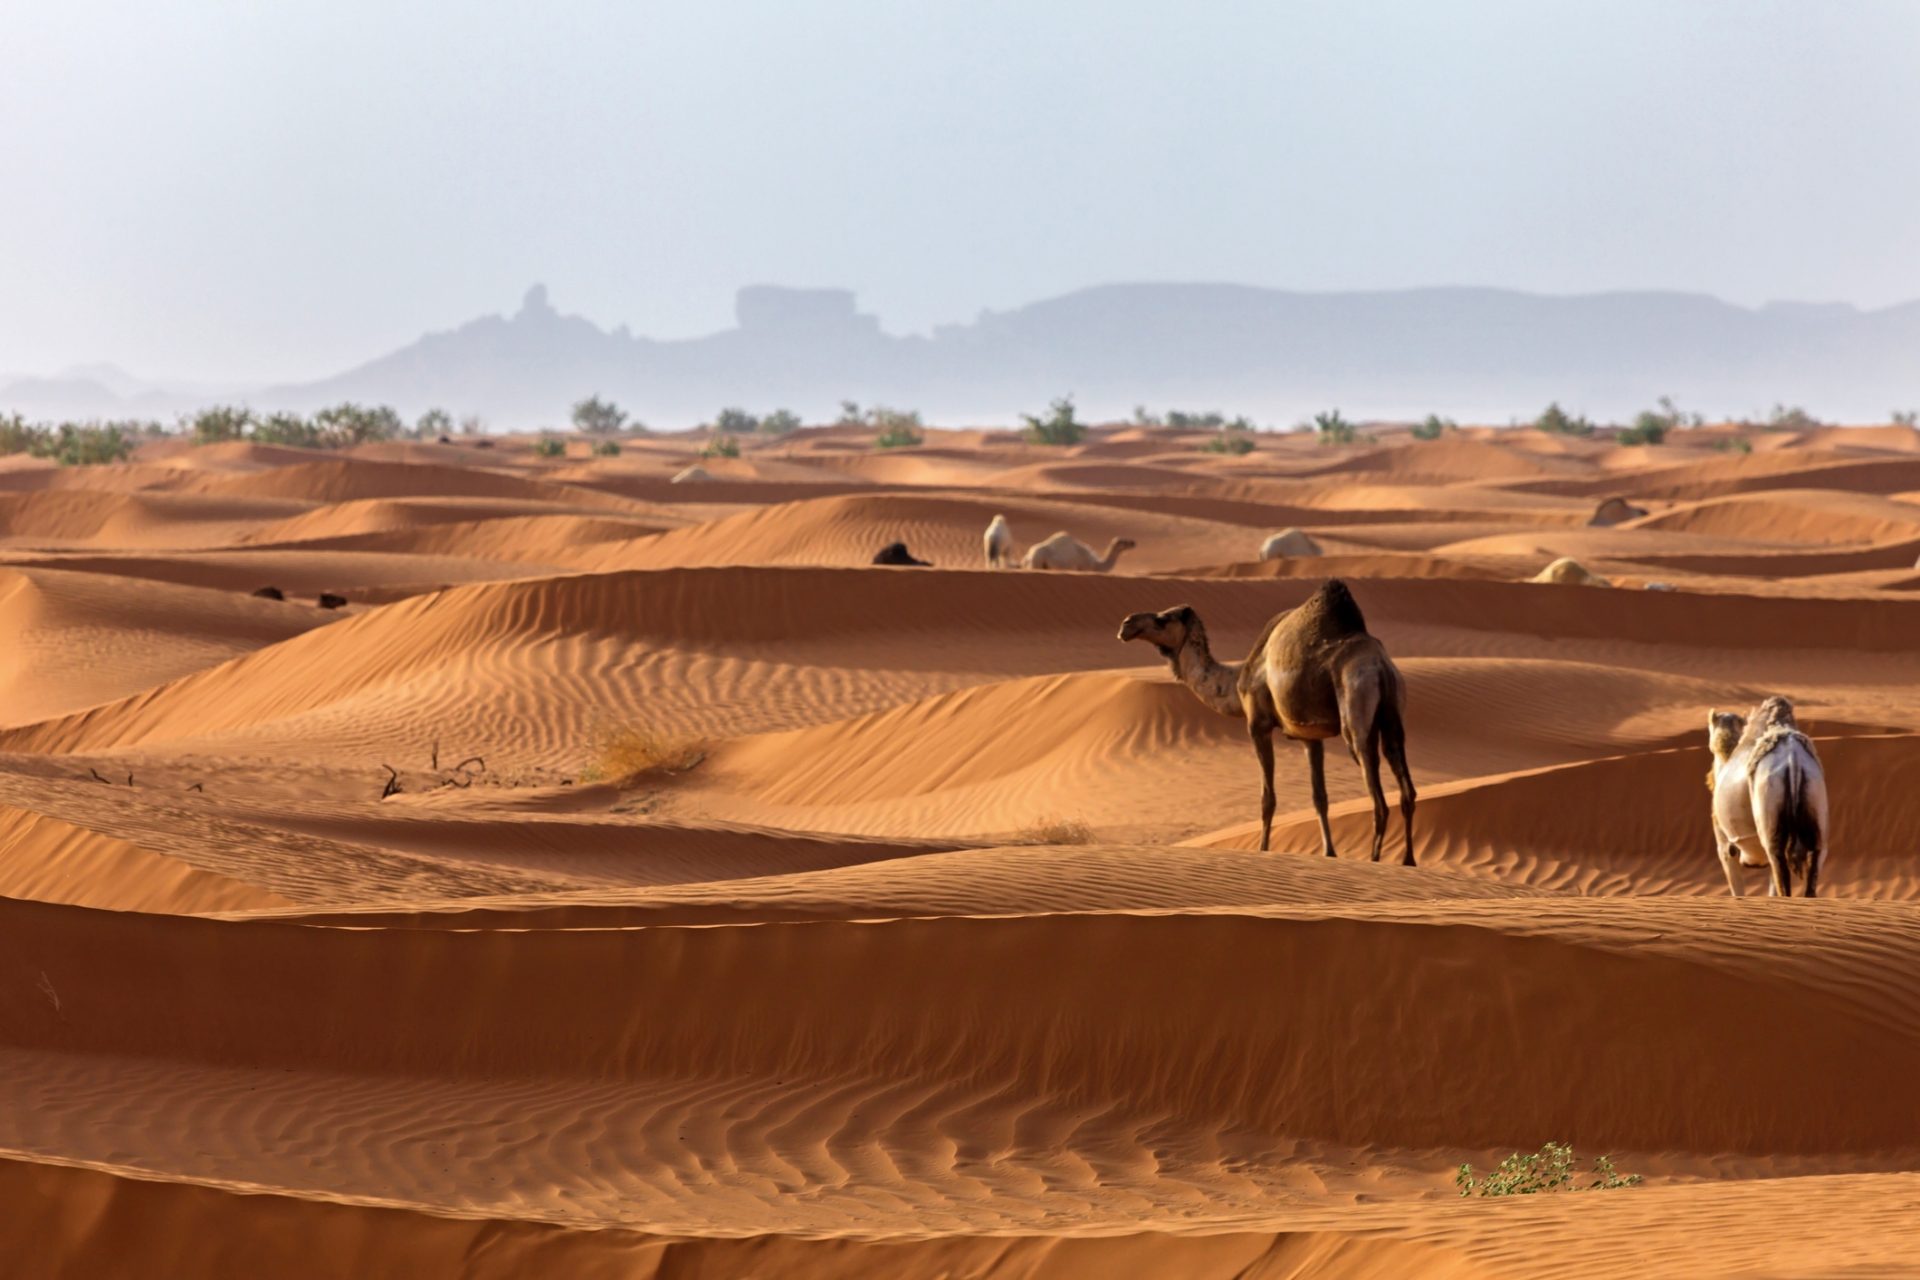 <p><span>『ガーディアン』紙によれば、大量の水を消費するアルファルファの栽培は、ほぼ全土が砂漠からなるサウジアラビアでは2016年に禁止されたという。</span></p>